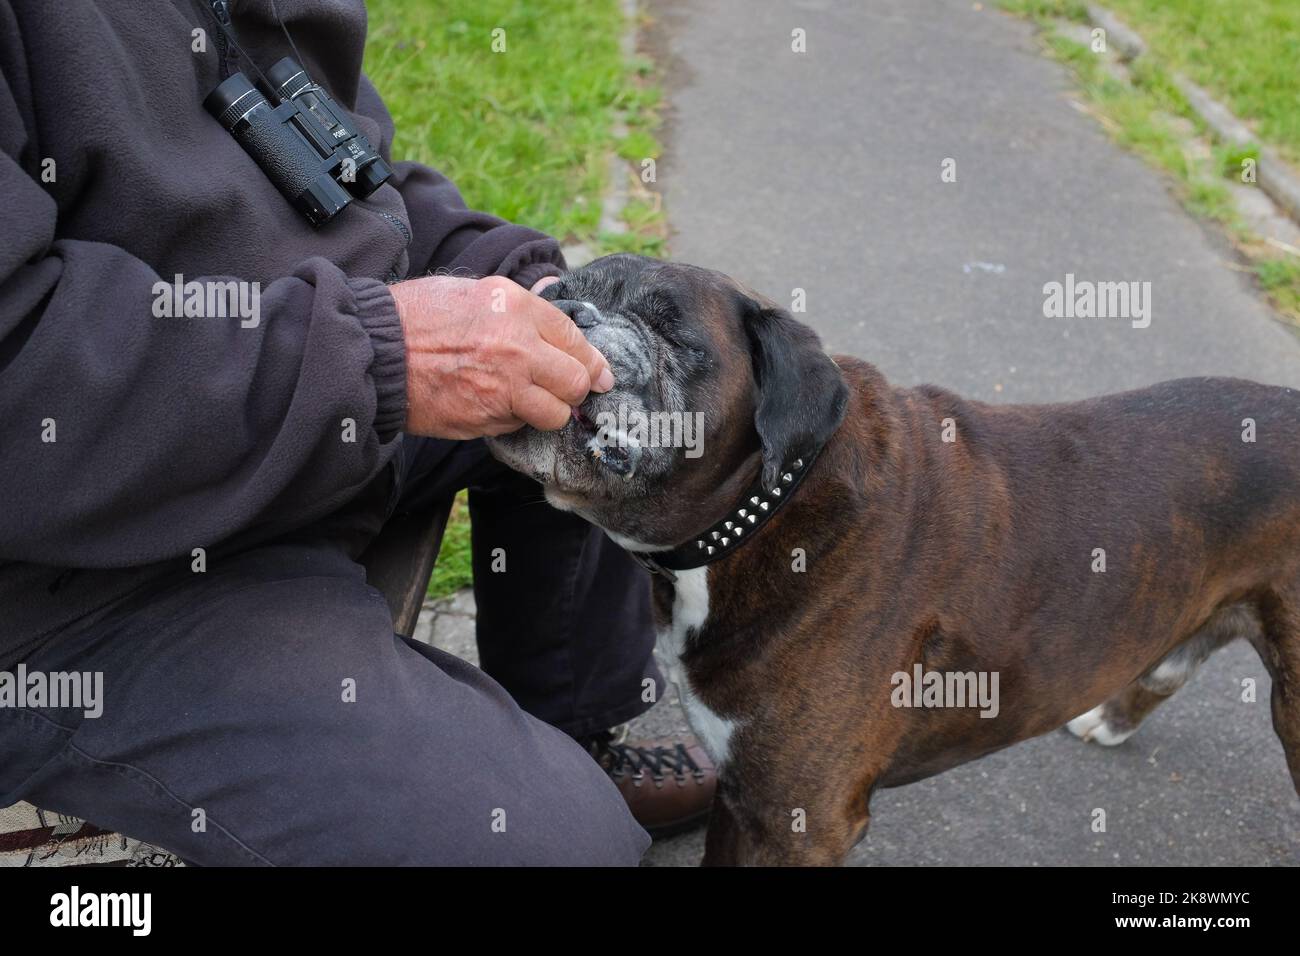 Yeux fermés, Olde English Bulldogge mange traiter lui étant donné par le propriétaire d'animal de compagnie mâle. Homme avec son meilleur ami dans un parc calme à Bacharach, Allemagne. Banque D'Images